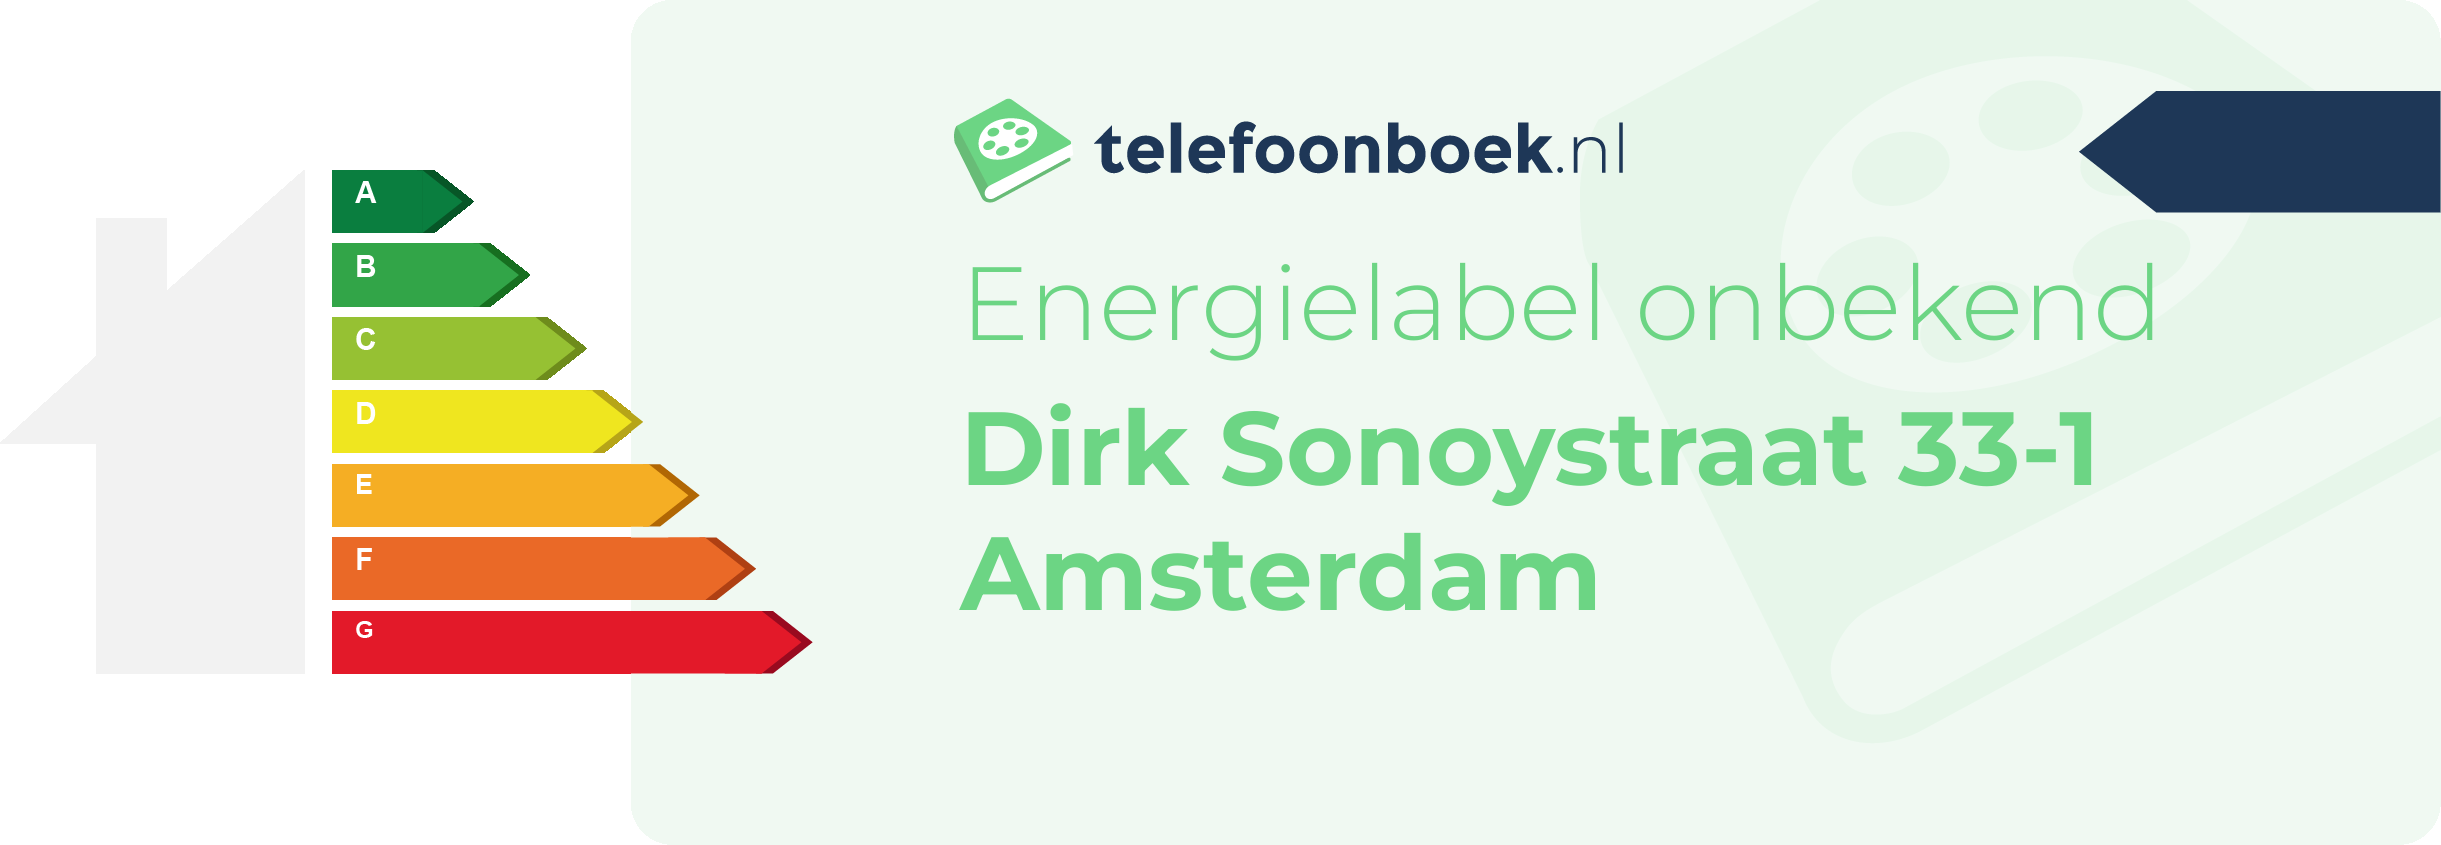 Energielabel Dirk Sonoystraat 33-1 Amsterdam